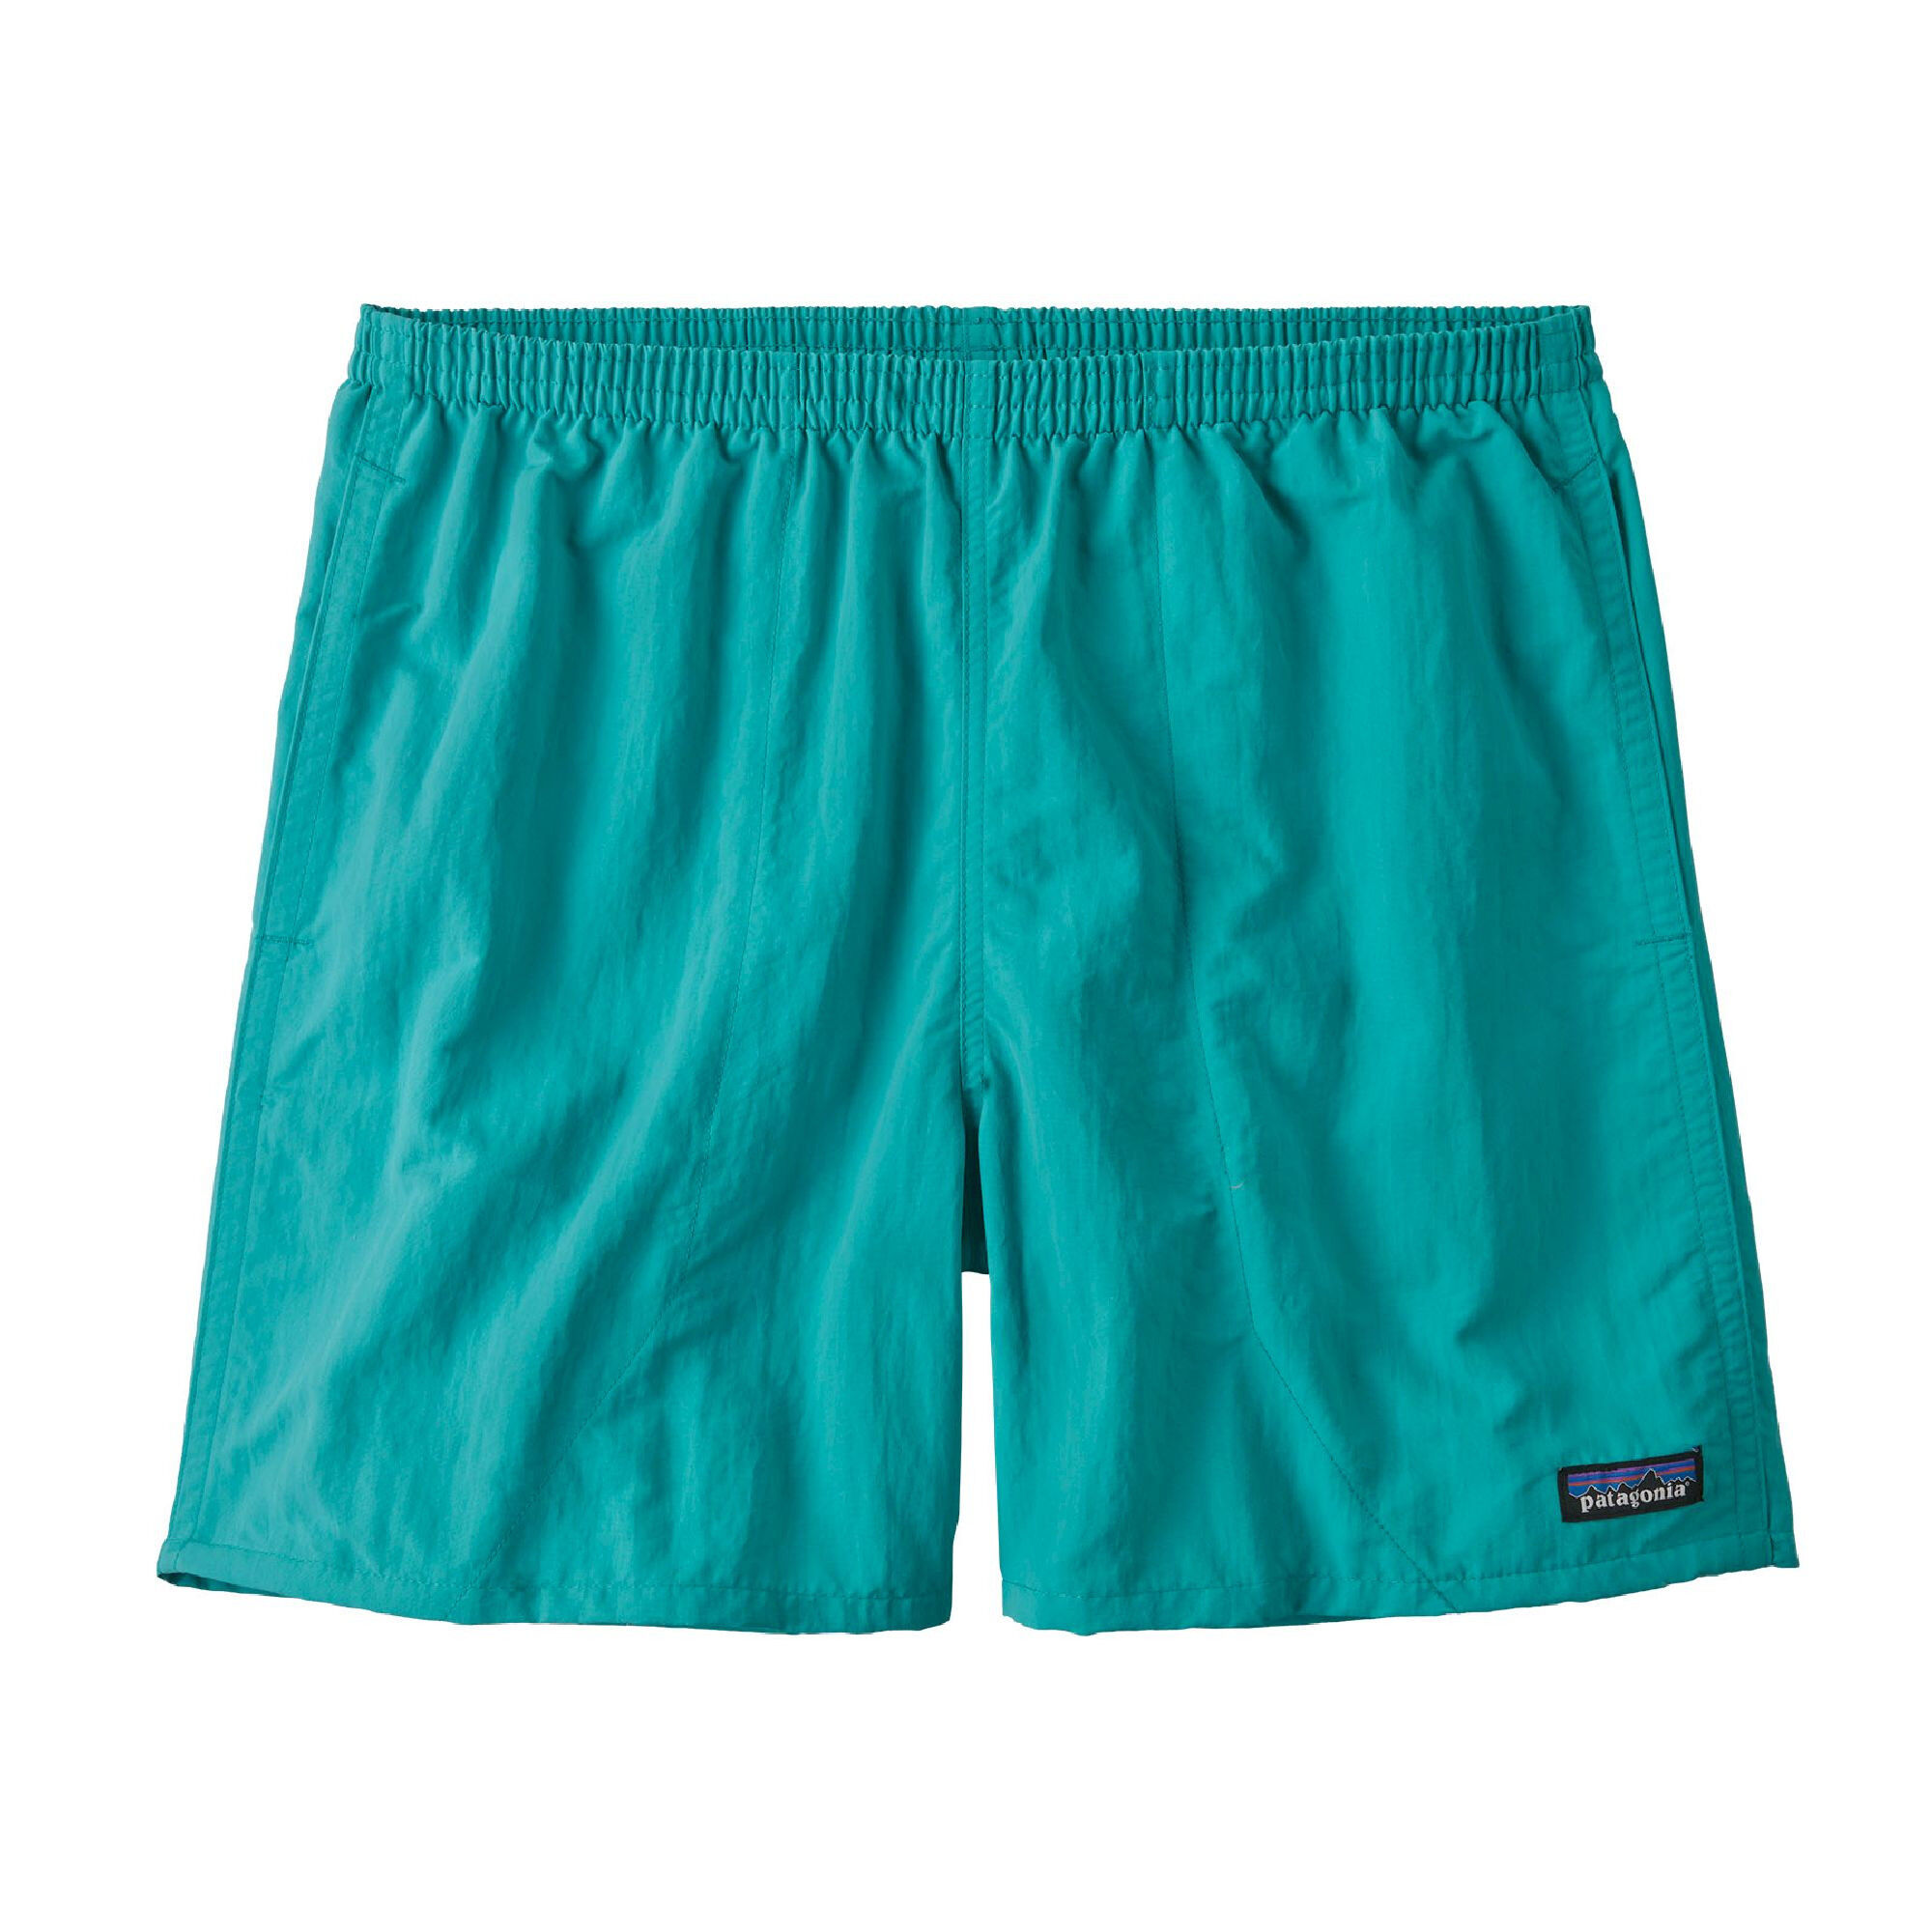 Patagonia Baggies Shorts 5 in. - Shorts - Men's